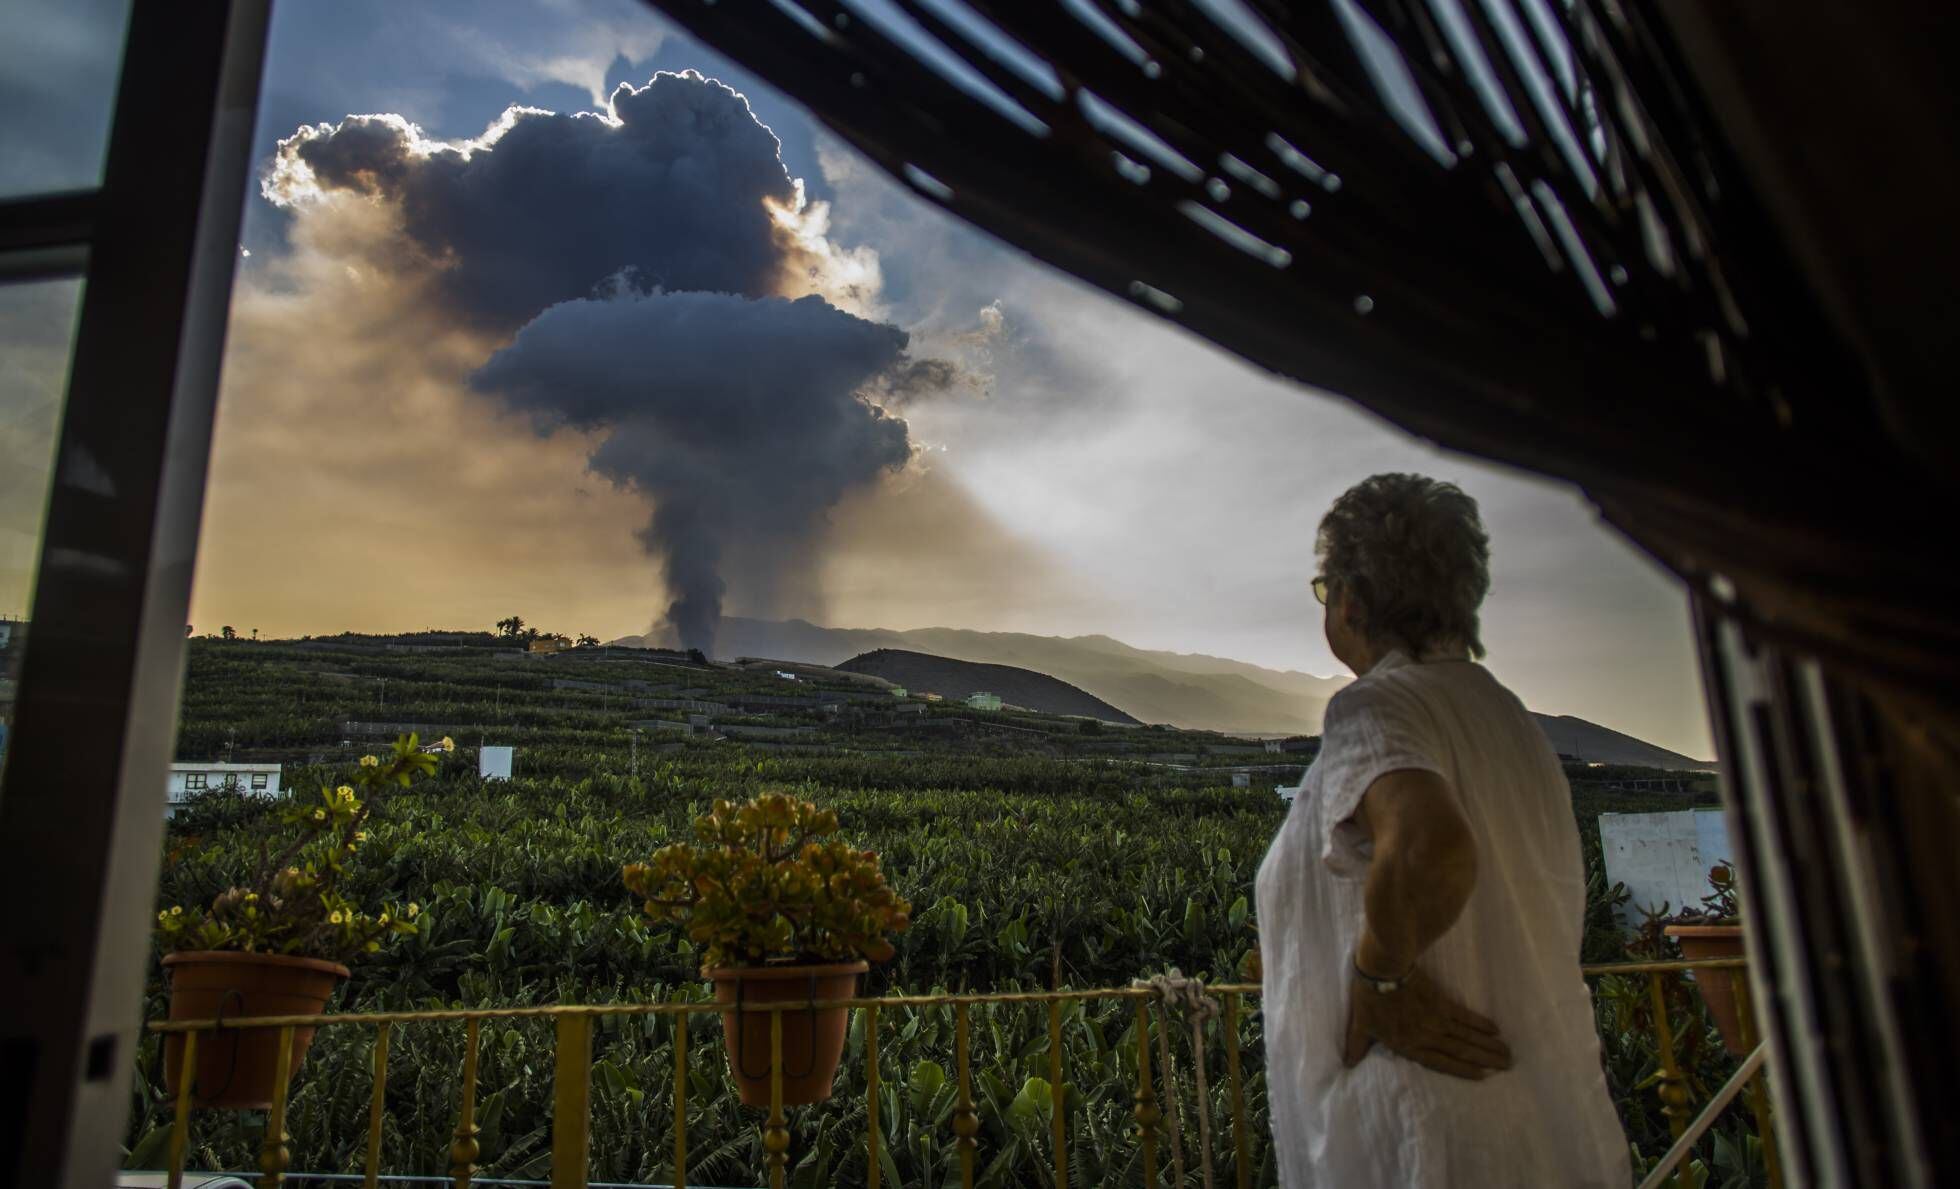 Uma mulher contempla a coluna de fumaça liberada pelo vulcão La Palma nesta quinta-feira.